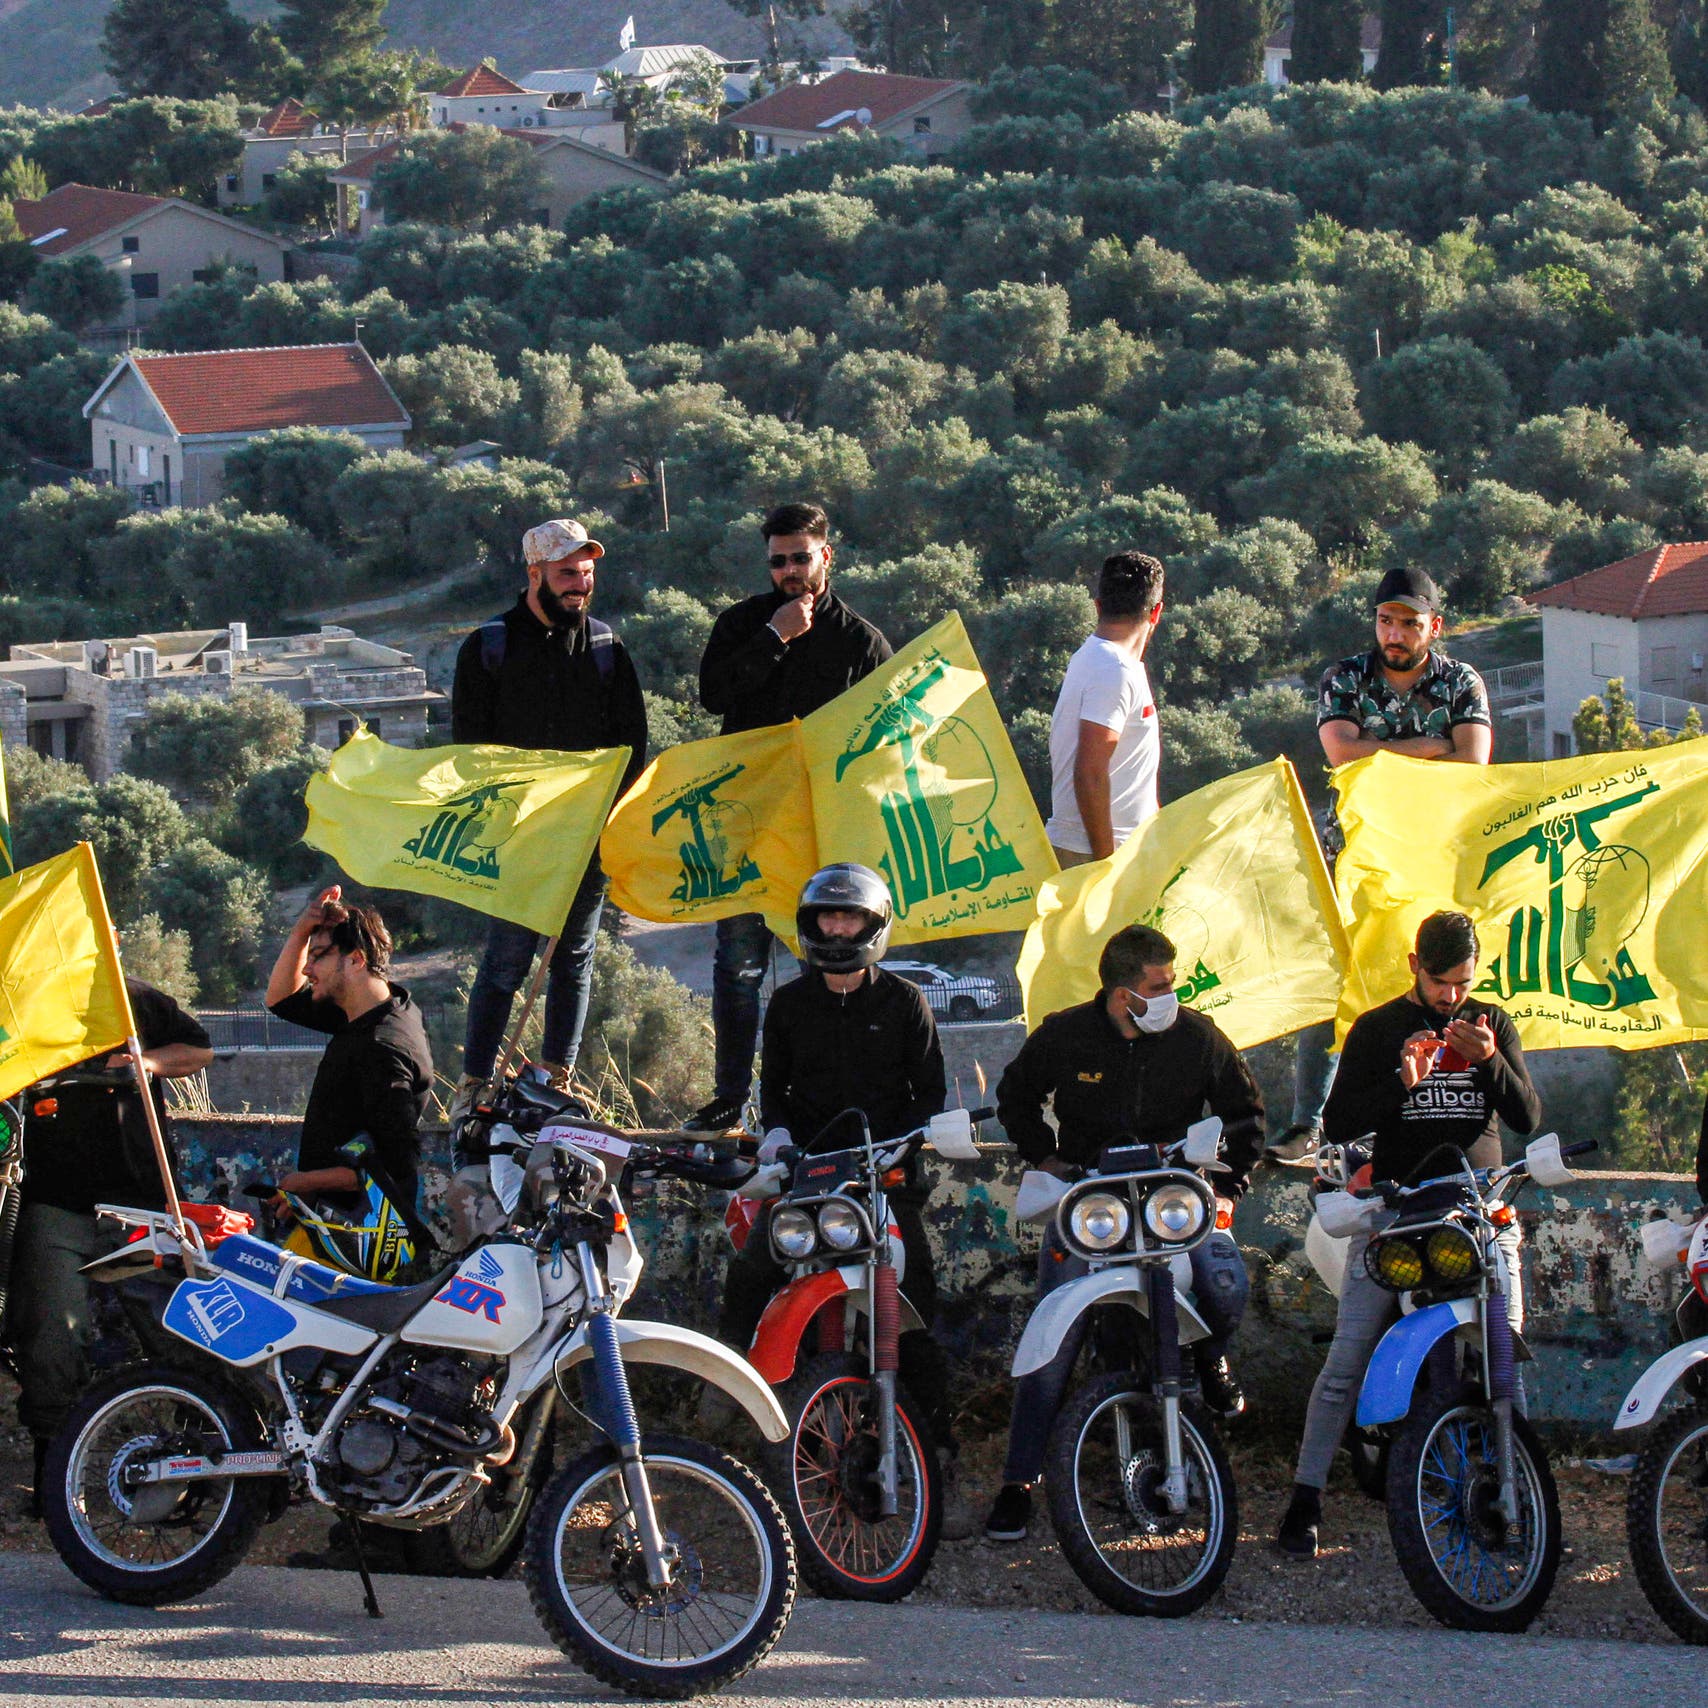 واشنطن: على أي حكومة بلبنان منع حزب الله من حيازة السلاح